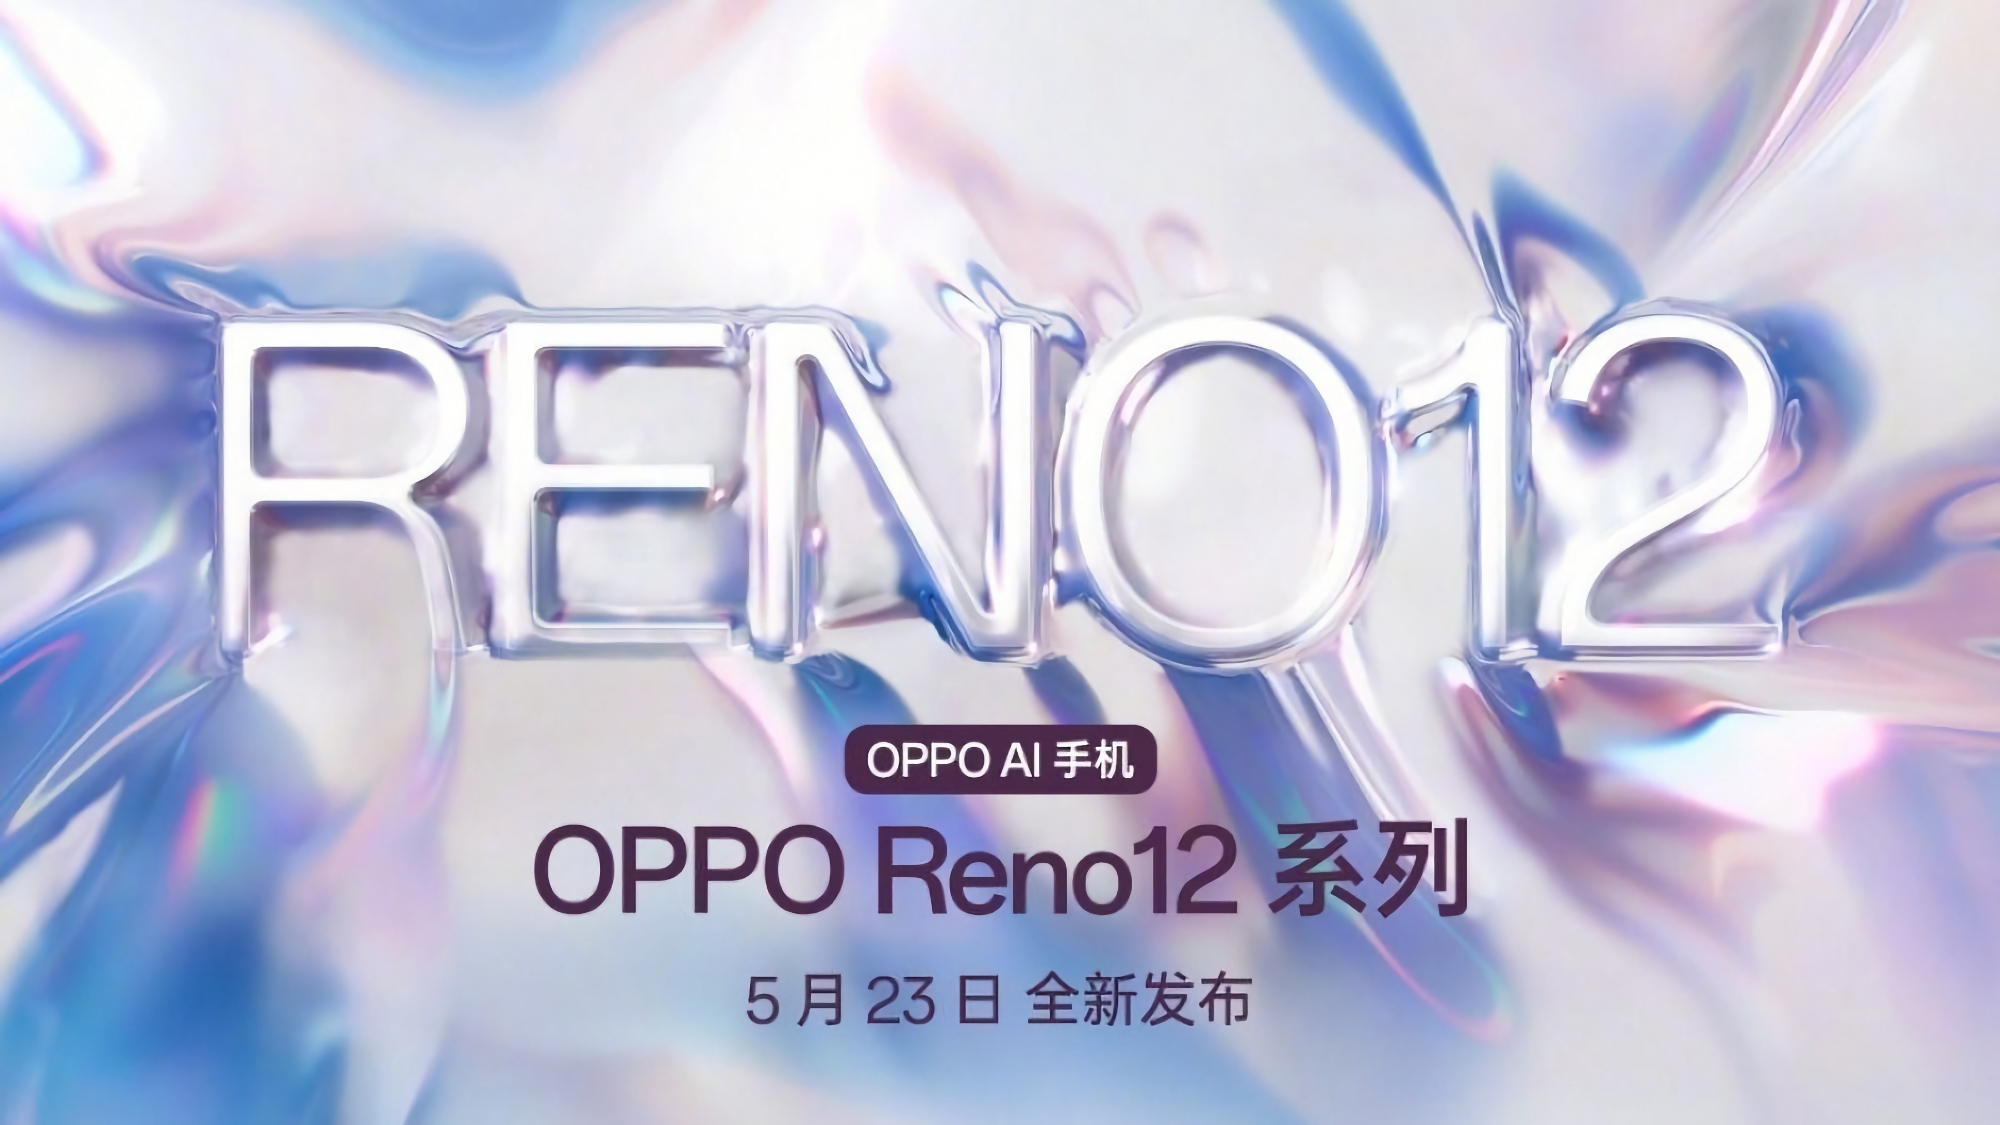 Ya es oficial: la serie de smartphones OPPO Reno 12 debutará el 23 de mayo